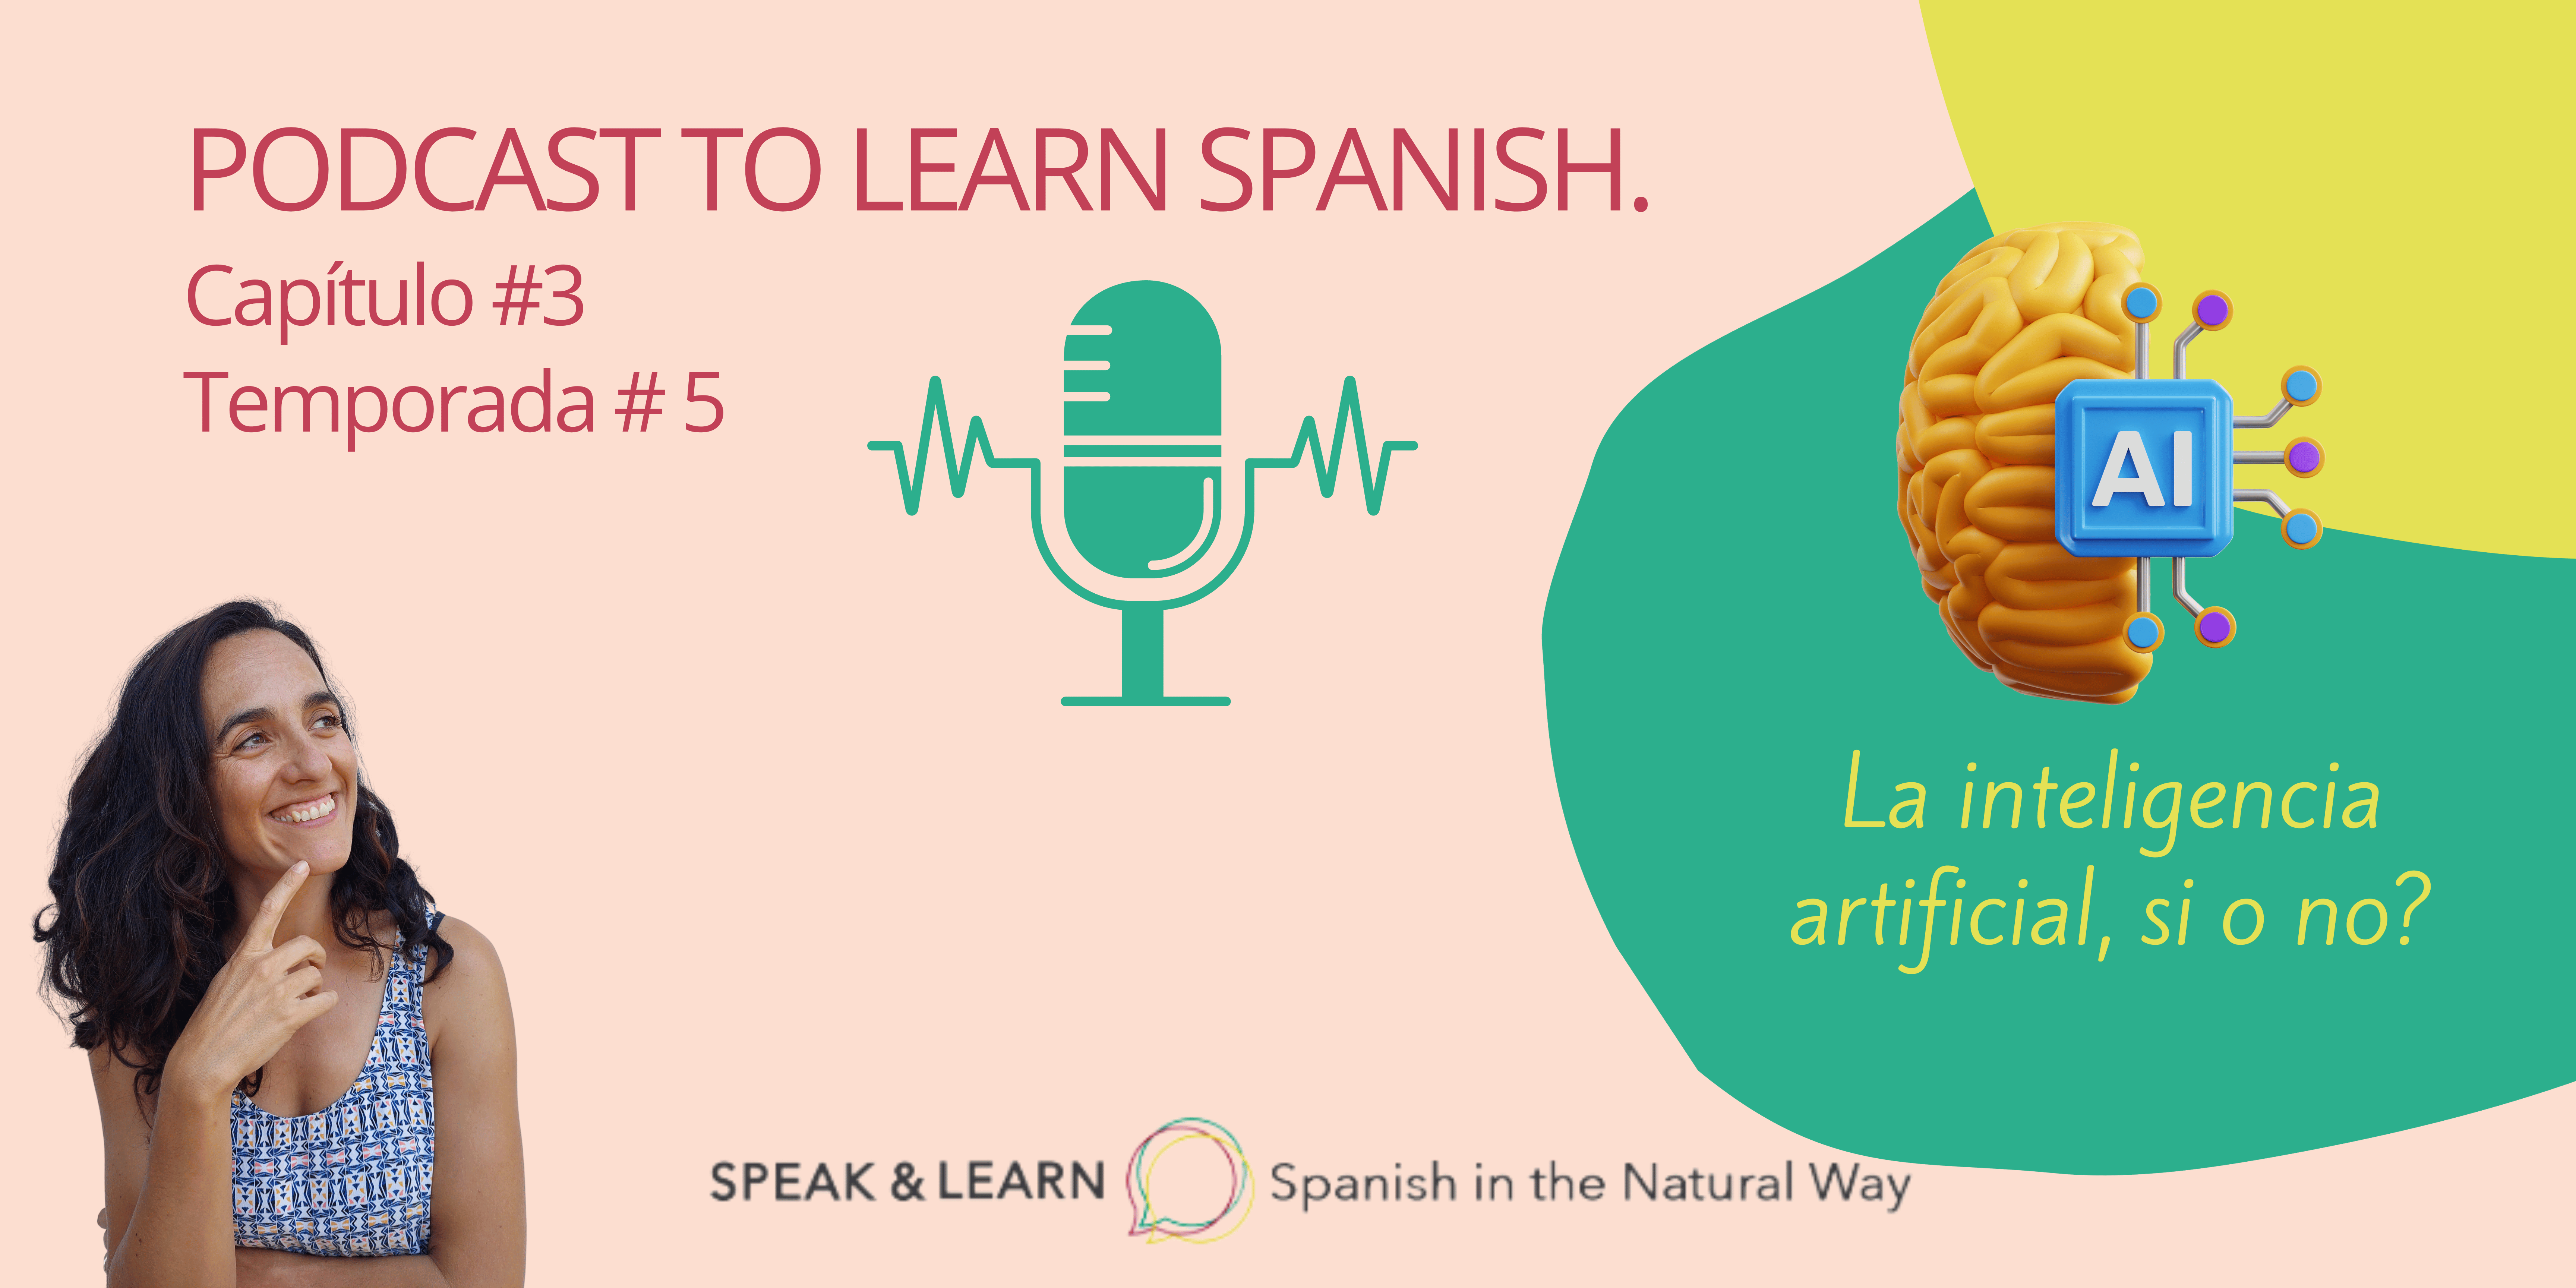 Portada de un nuevo episodio de nuestro Podcast para aprender español